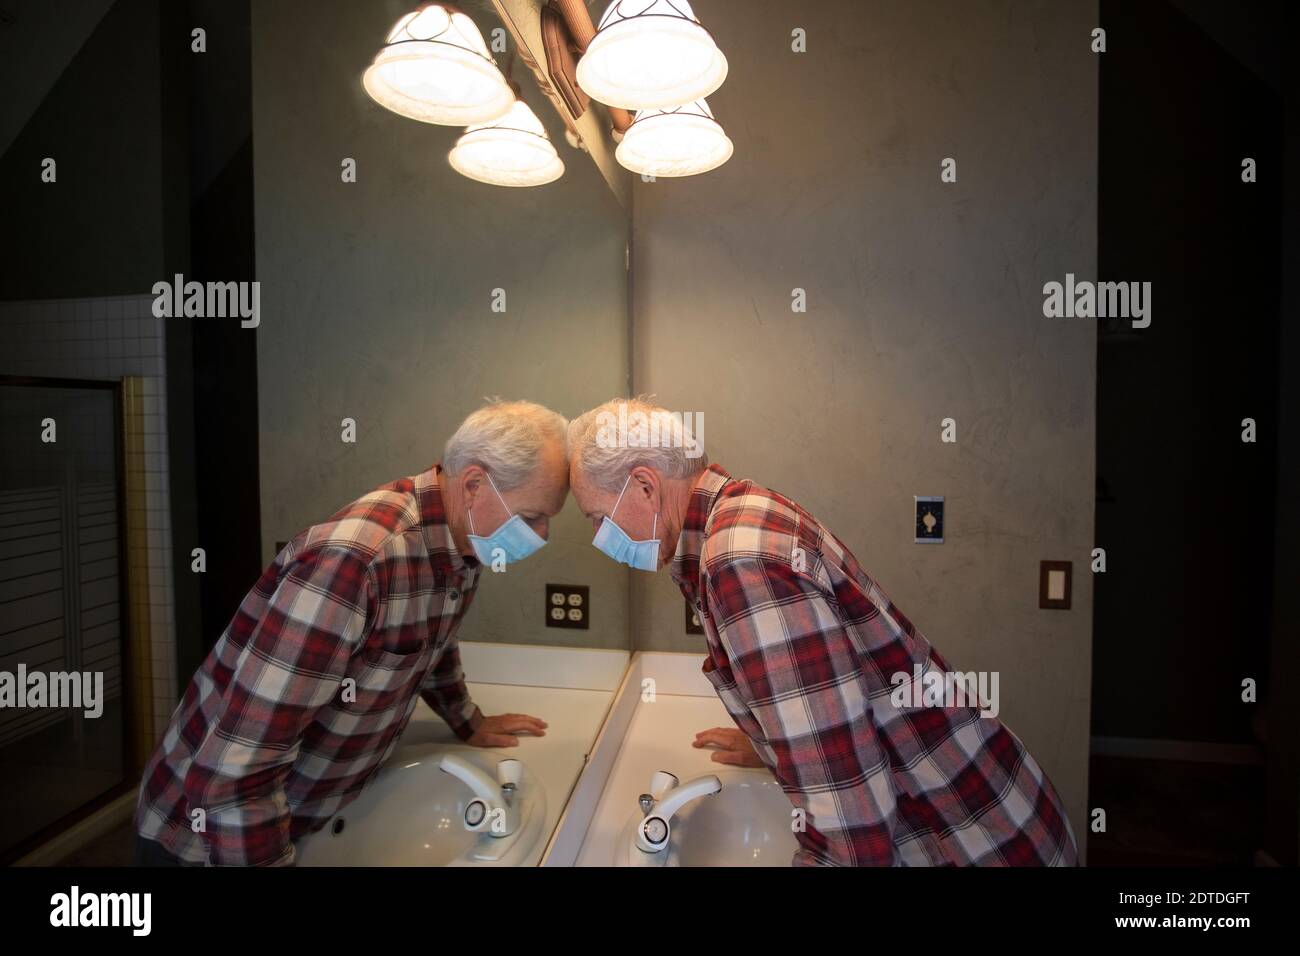 Uomo anziano in maschera protettiva Covid appoggiando la testa sullo specchio in bagno Foto Stock